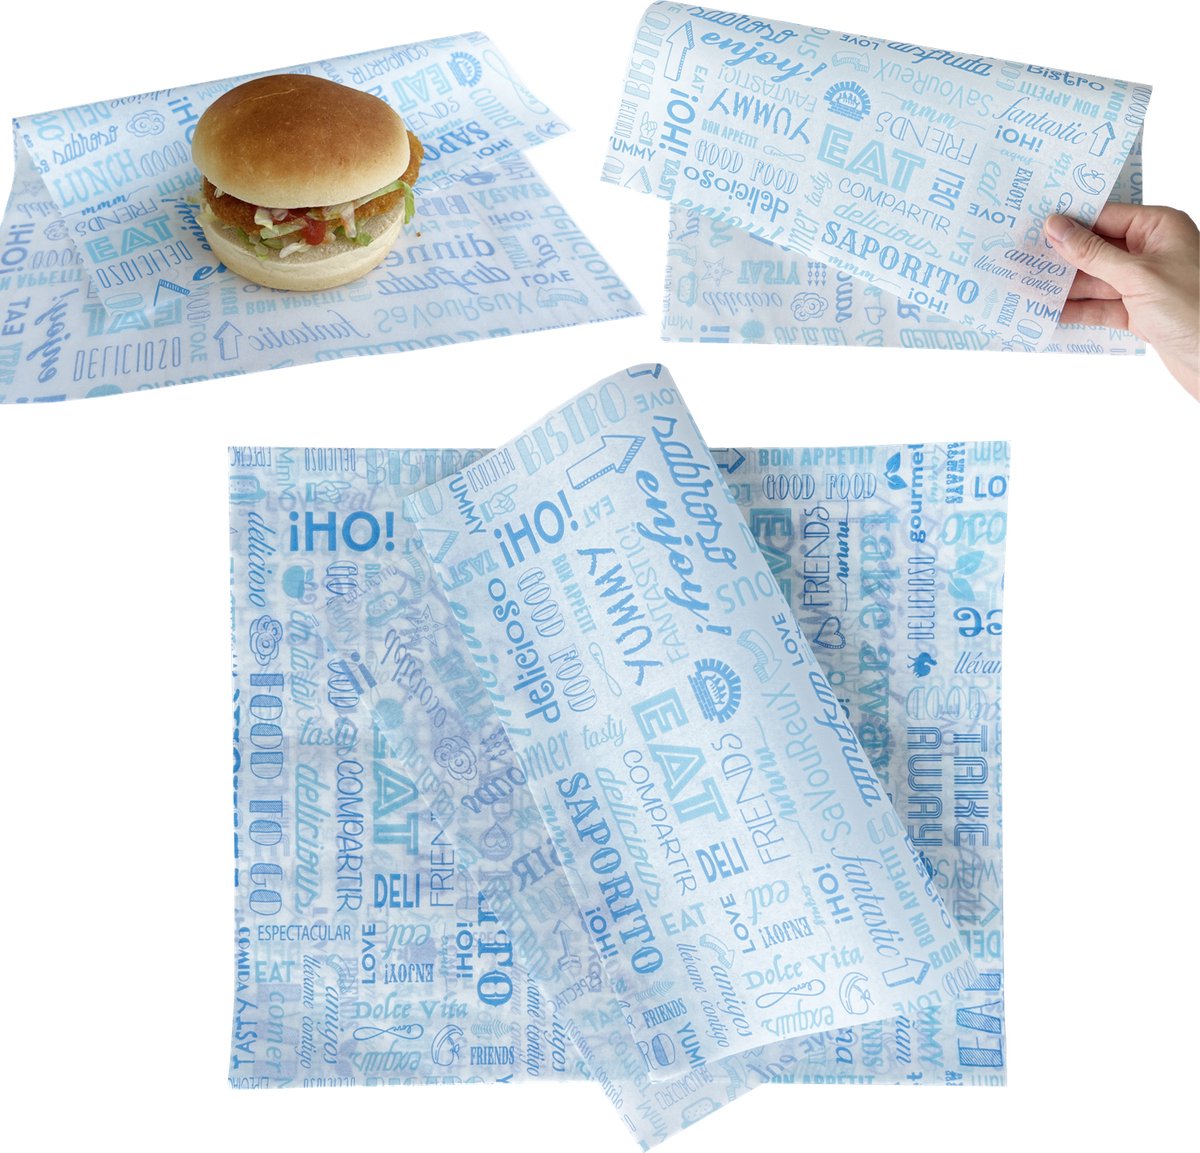 Rainbecom - 28 x 34 cm - 100 Stuks - Hamburger Vetvrij Papier - Duurzaam - Vocht en Vetbestendig - Papieren voor Sandwiches, Hamburgers, Snacks